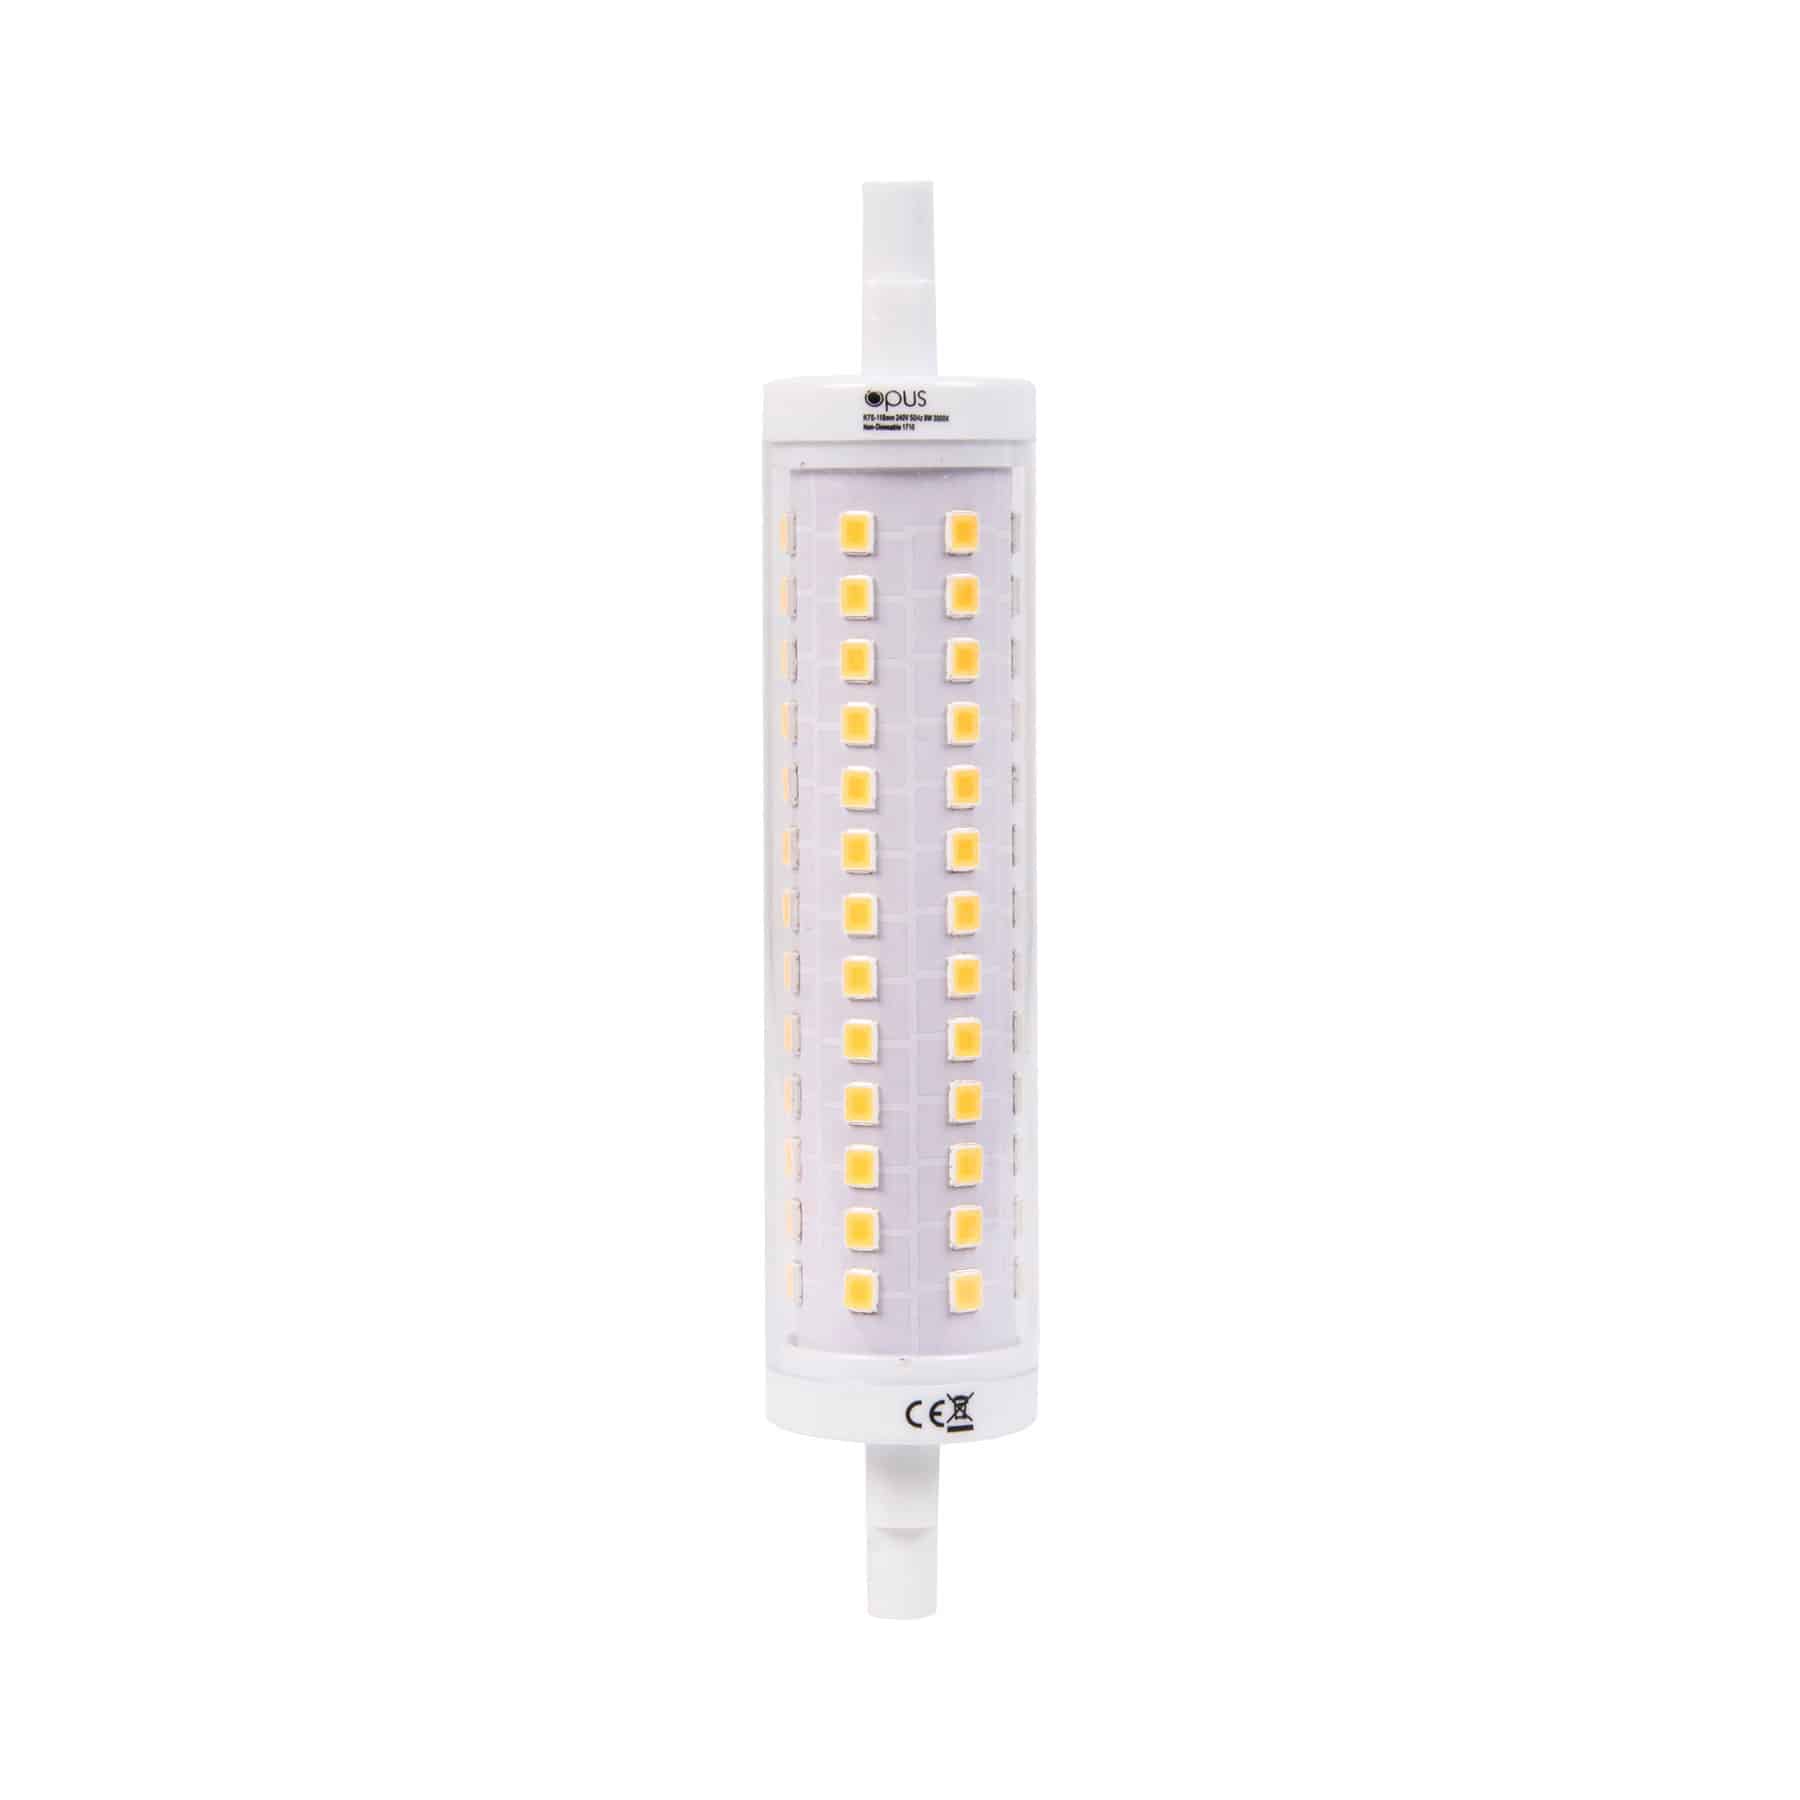 Opus Lighting Technology 9watt Linear LED R7s 118mm Warm White Bulb